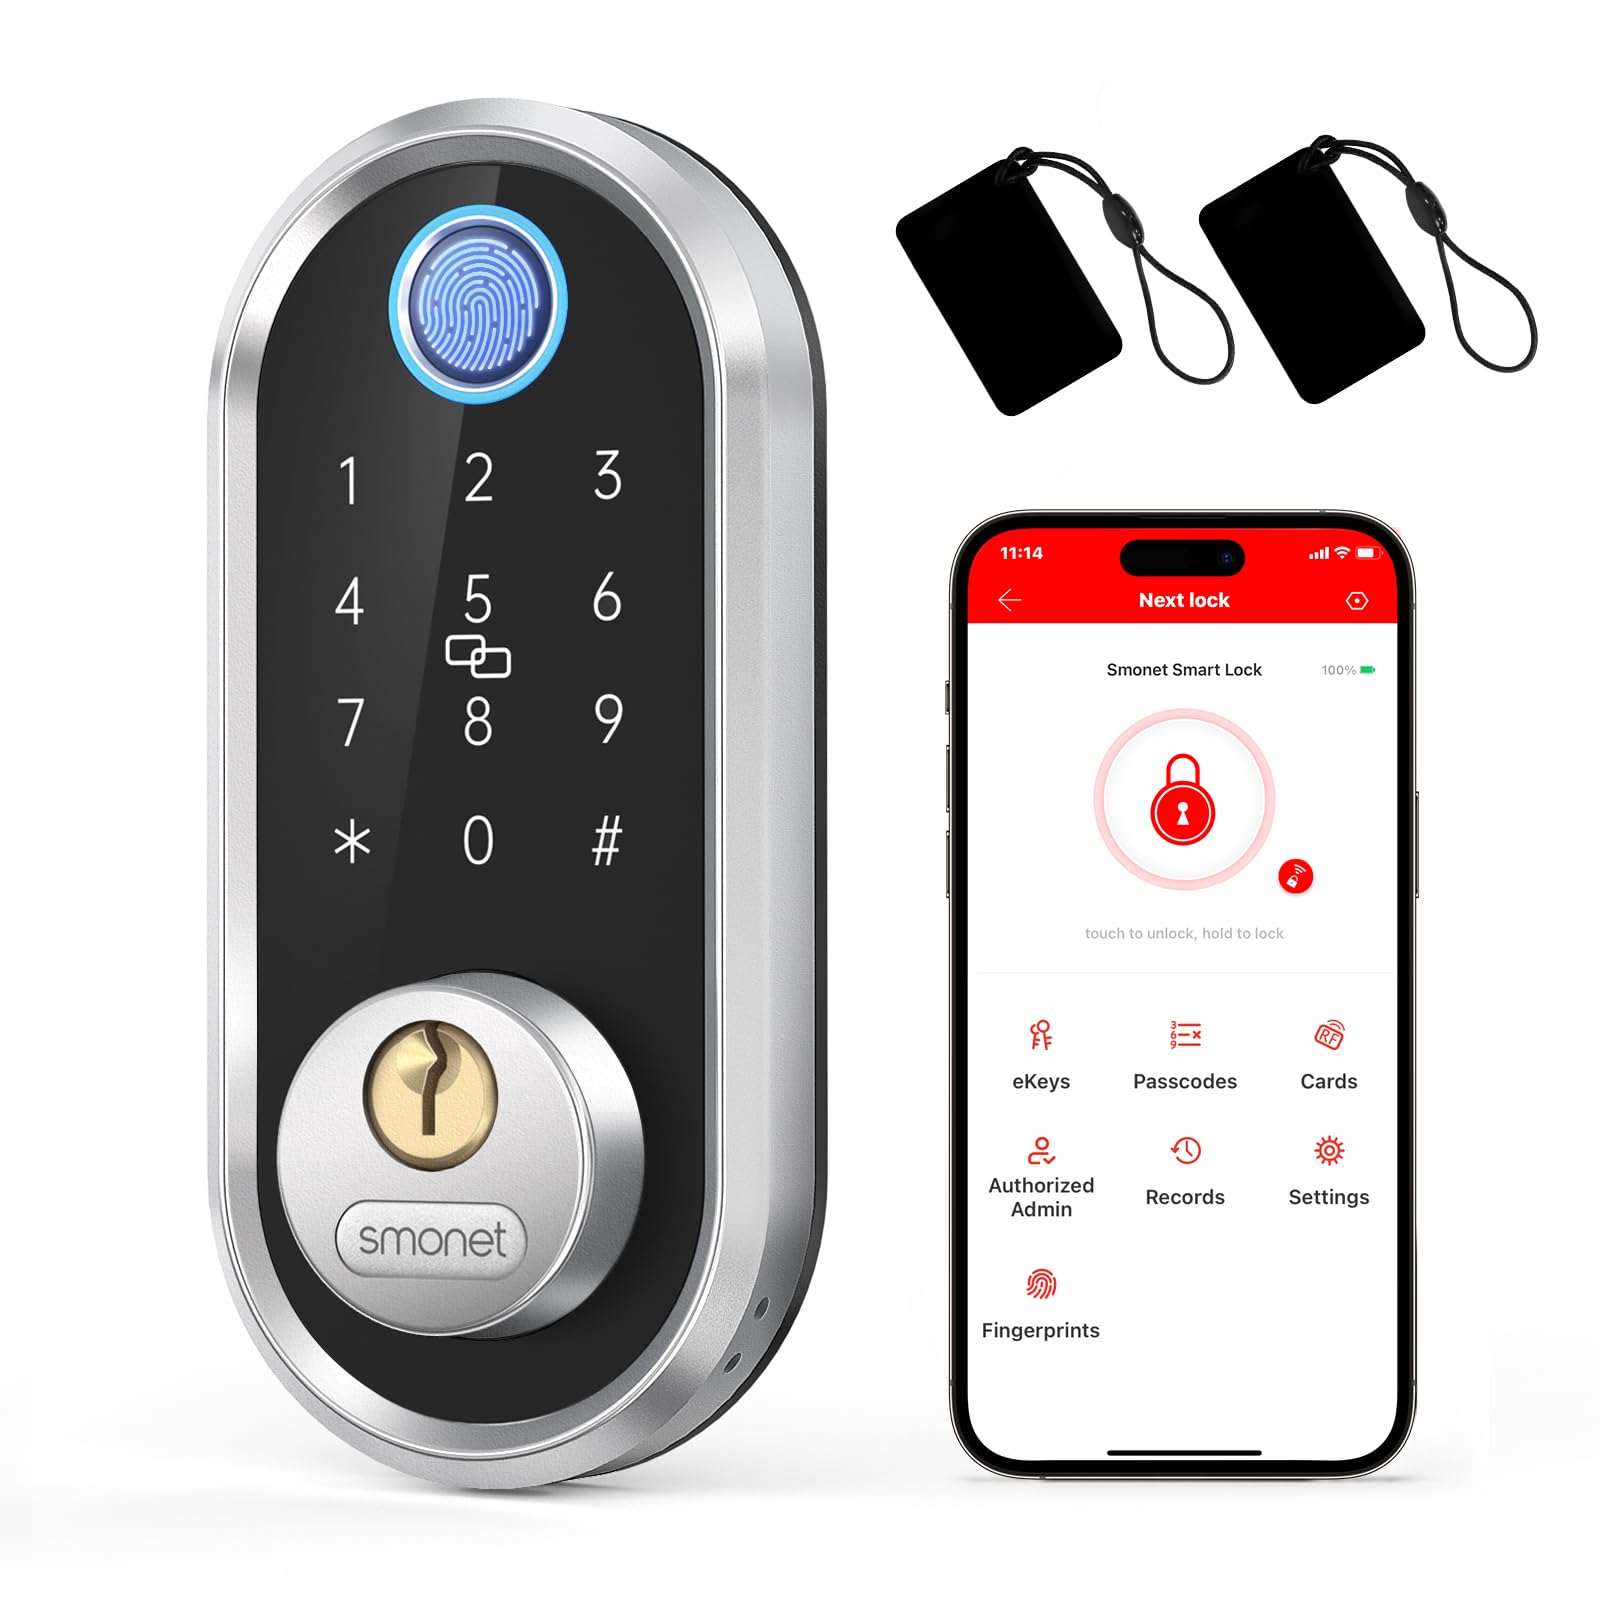 Smart Deadbolt, SMONET Fingerprint Electronic Deadbolt Door Lock with Keypad-Bluetooth Keyless Entry Keypad Smart Deadbolt App Control, Ekeys Sharing, App Monitoring Auto Lock for Homes and Hotel